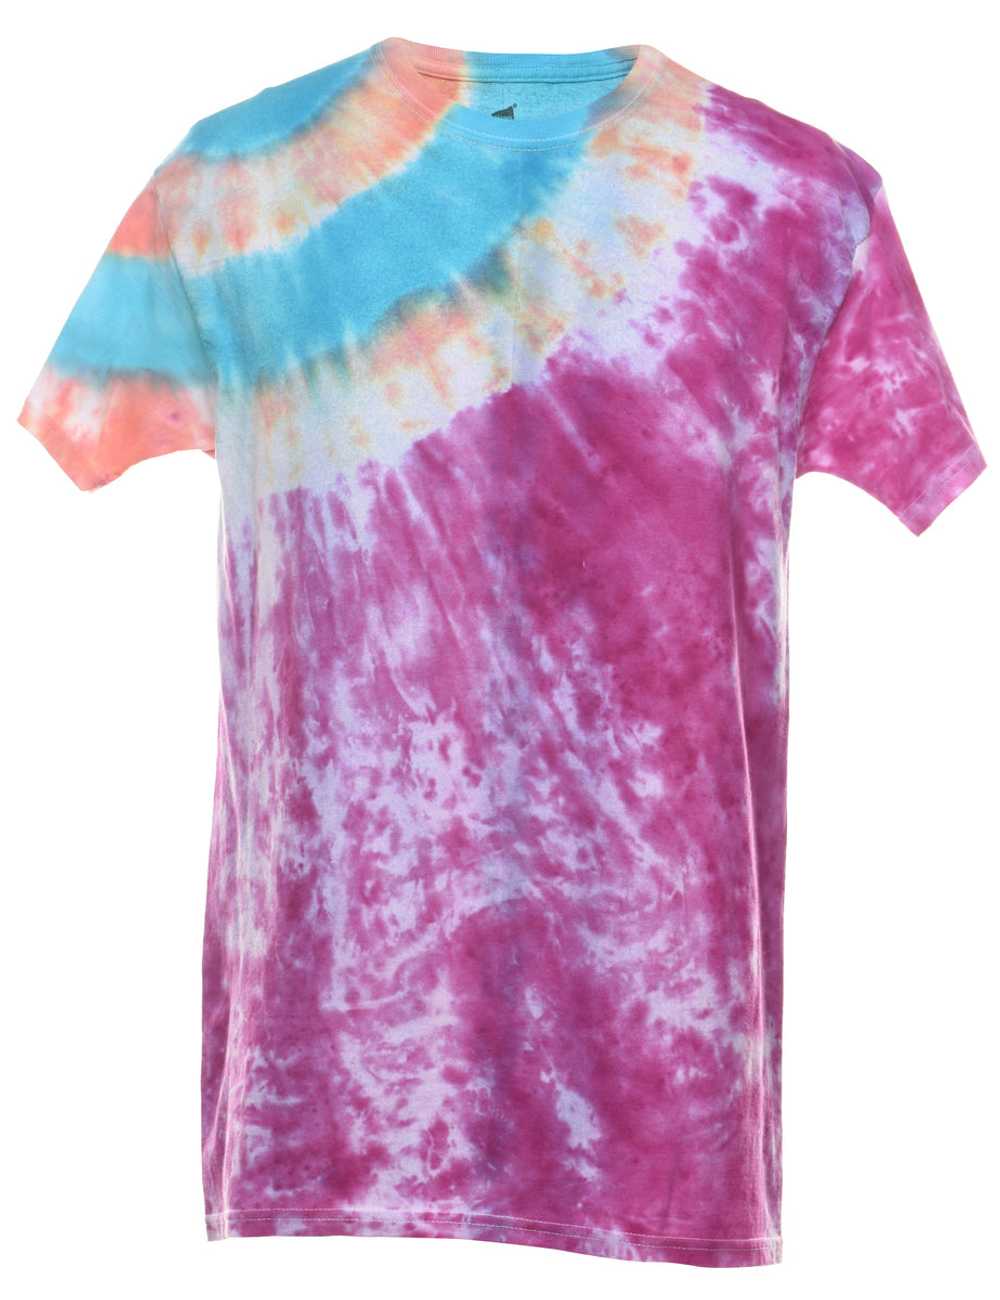 Multi-colour Tie Dye T-shirt - M - image 1